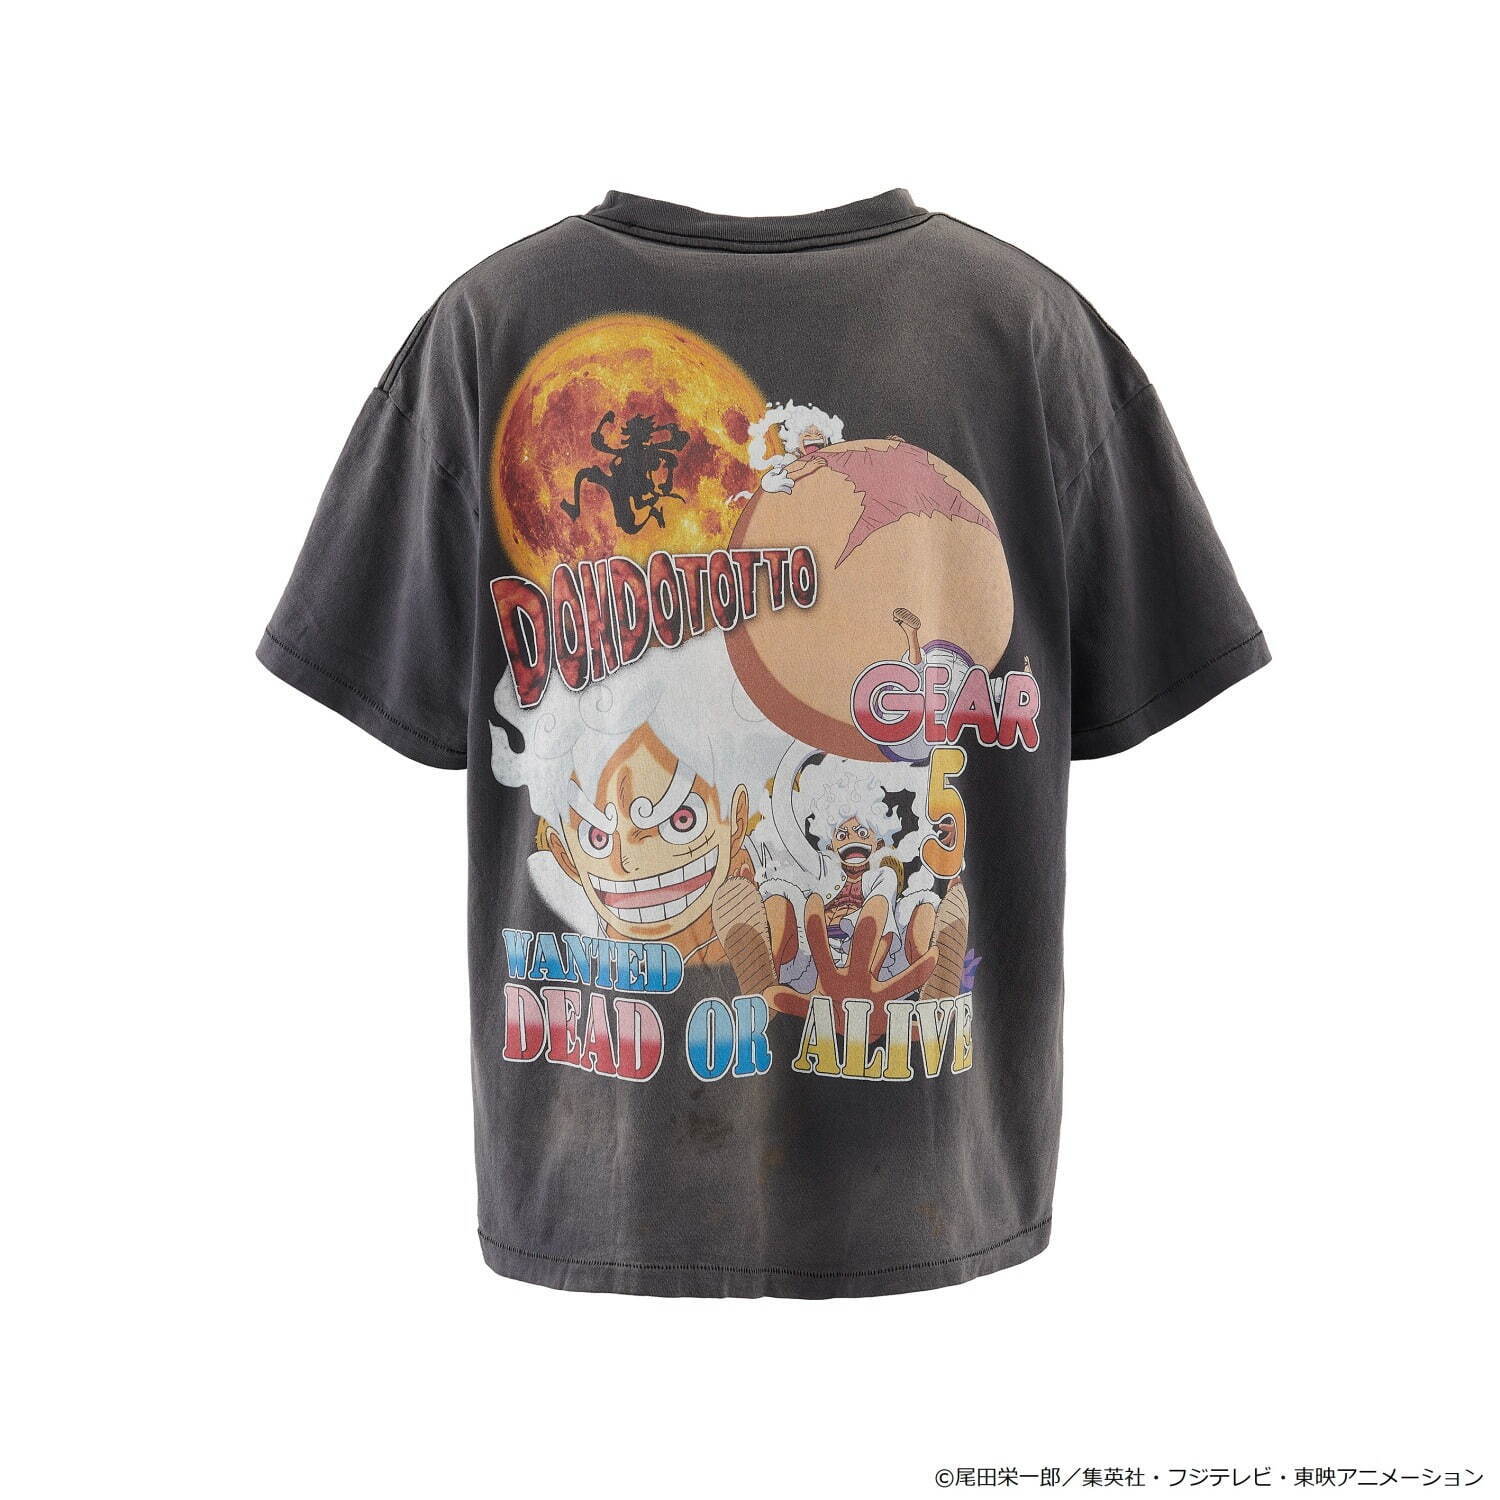 セント マイケル×『ONE PIECE』 Tシャツ 35,200円